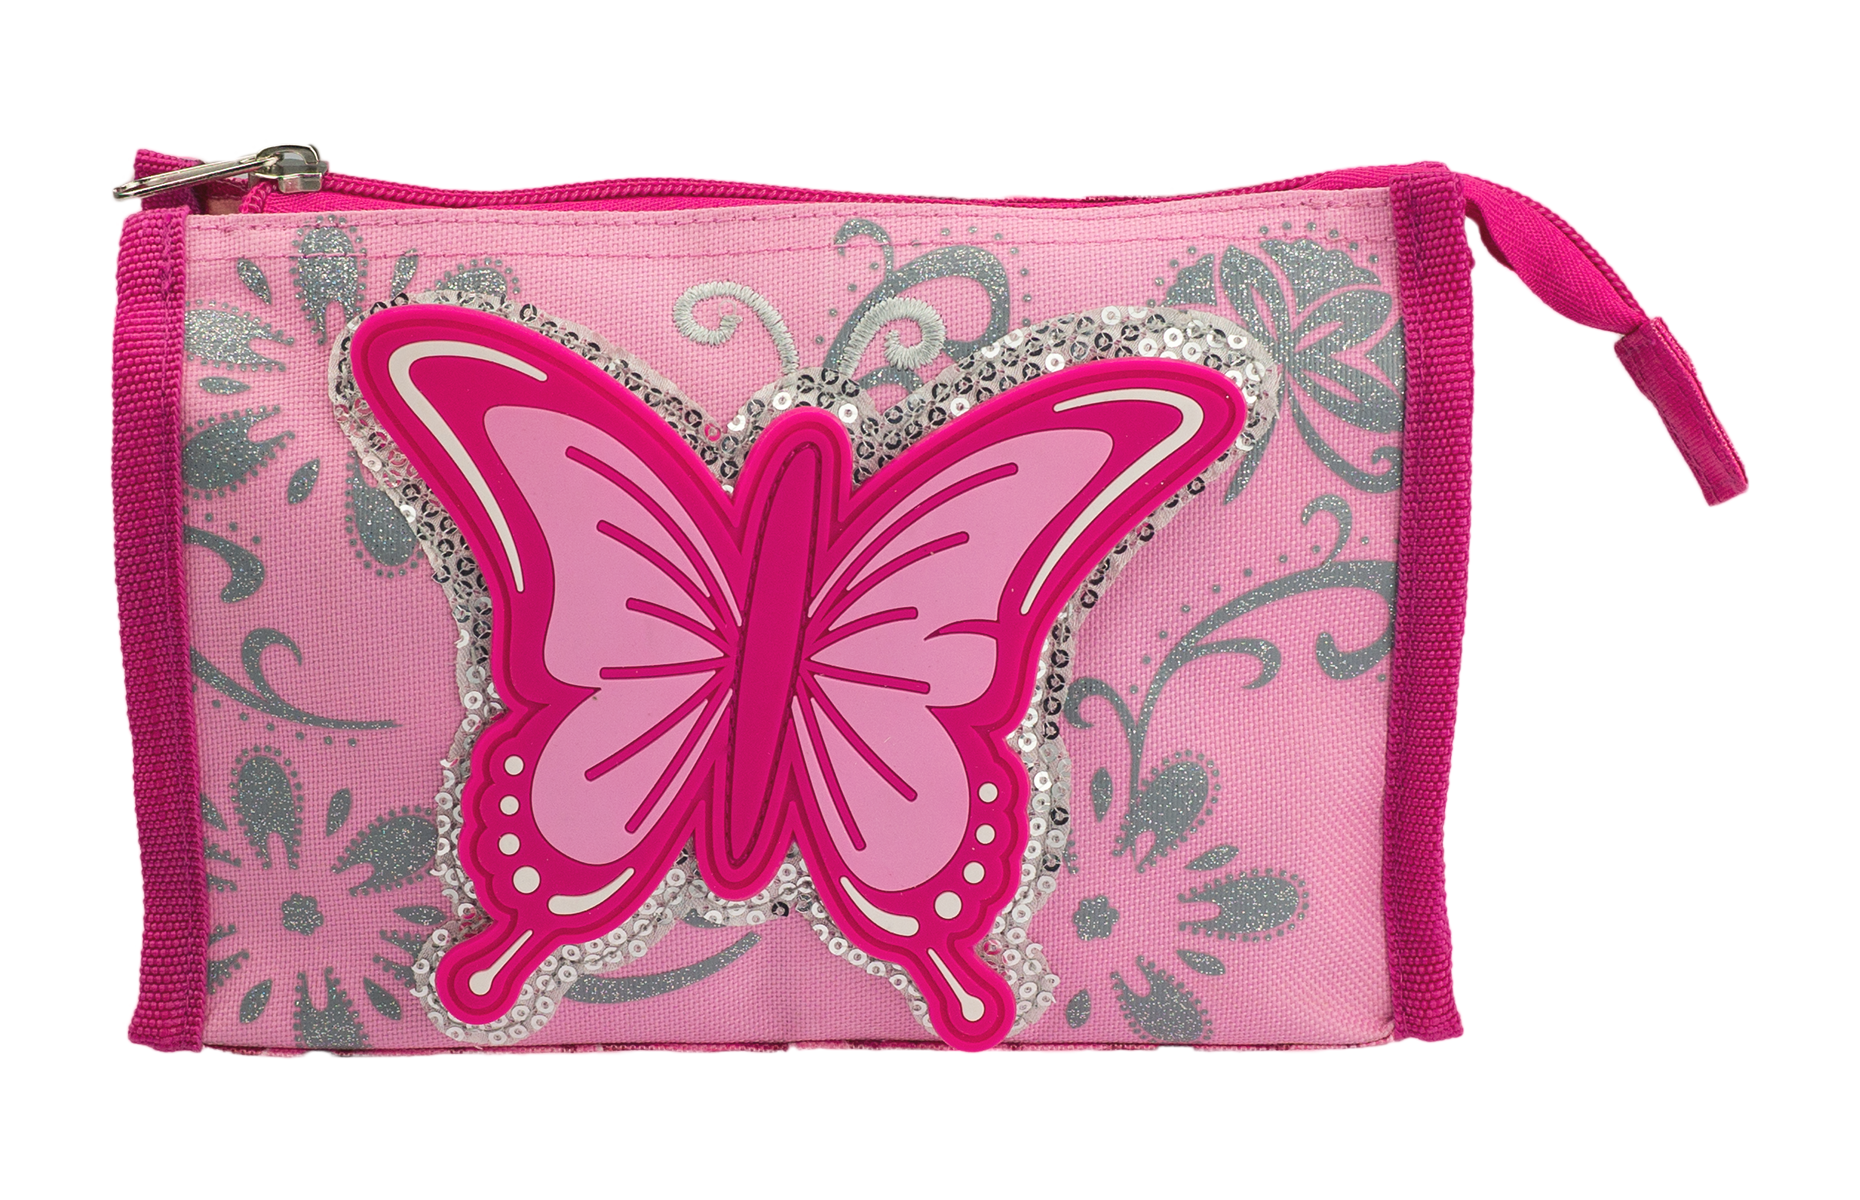 Kinder Beauty-case Kosmetiktasche "Schmetterling" in pink - 1924-100-80